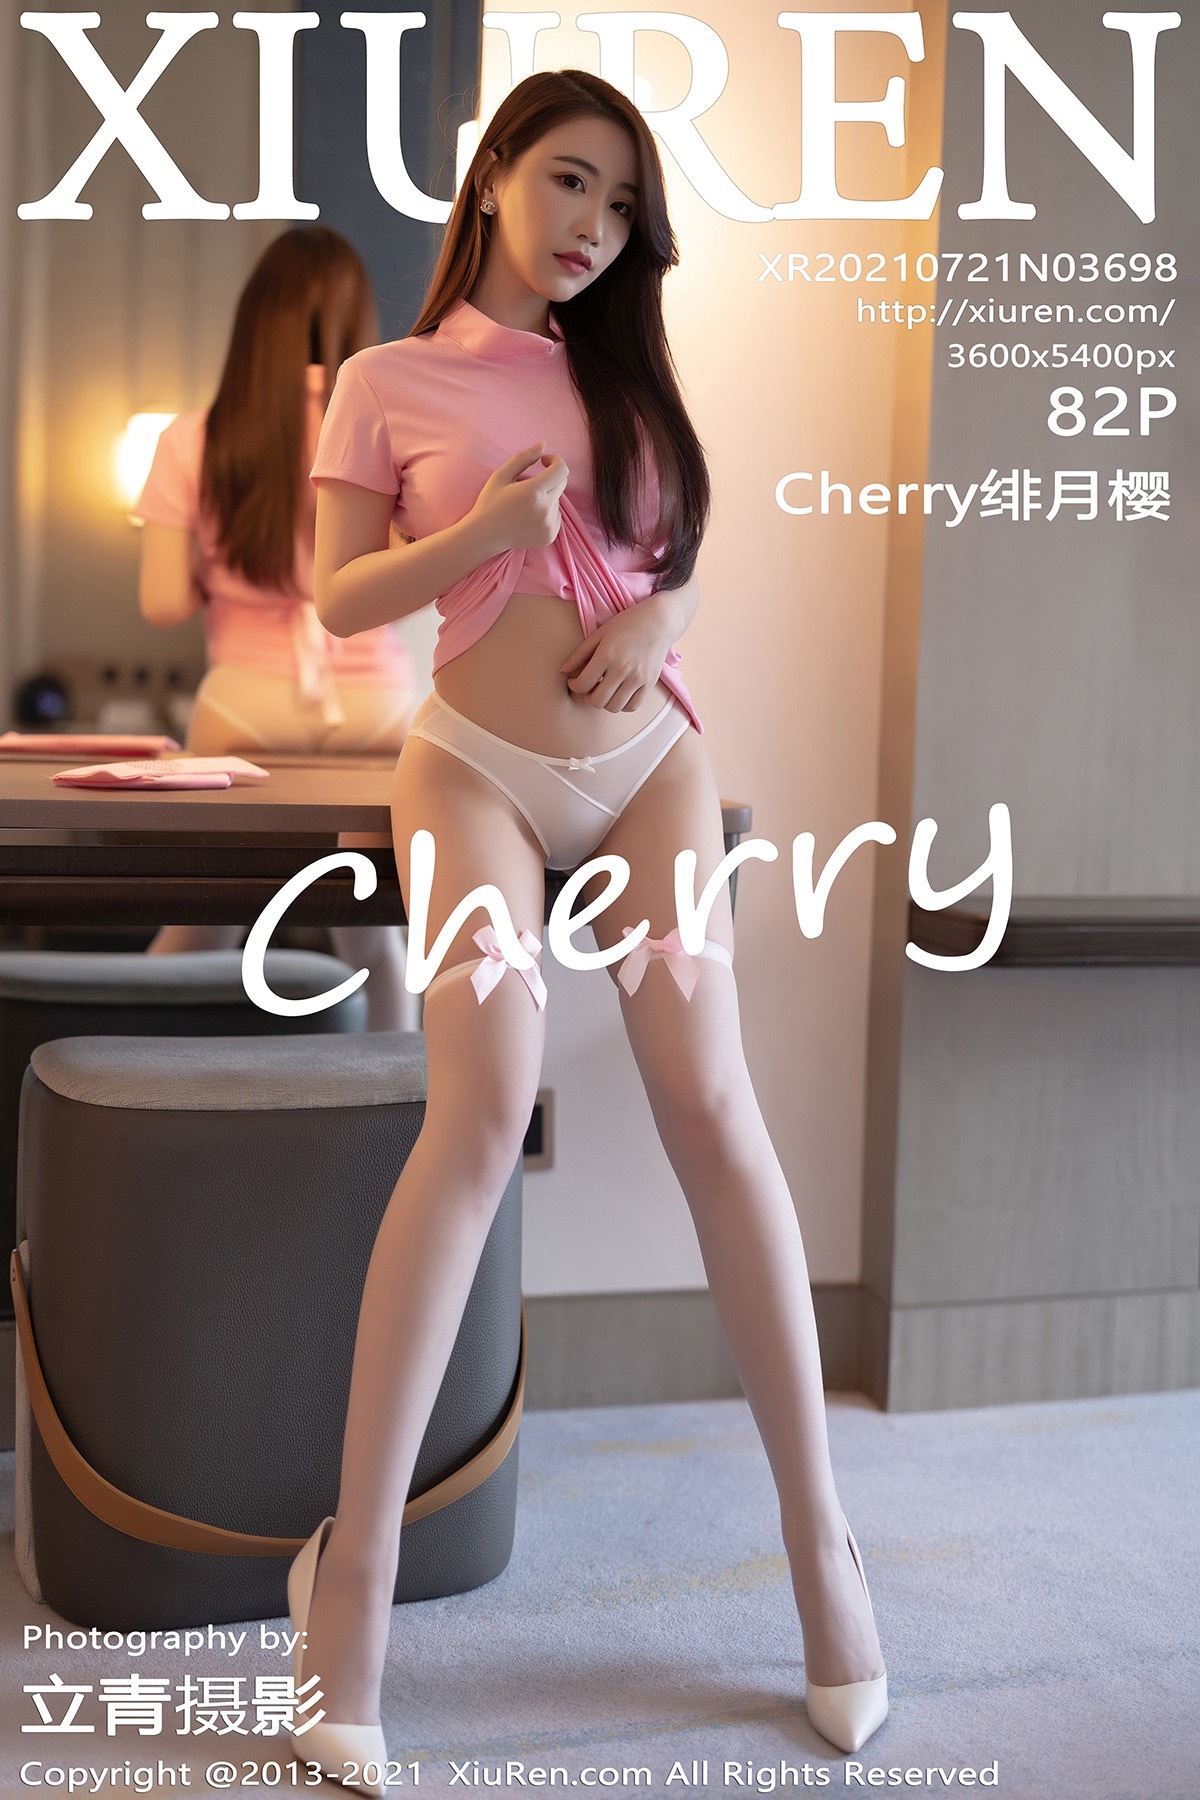 XIUREN XIUREN 2021.07.21 No.3698 Cherry Cherry